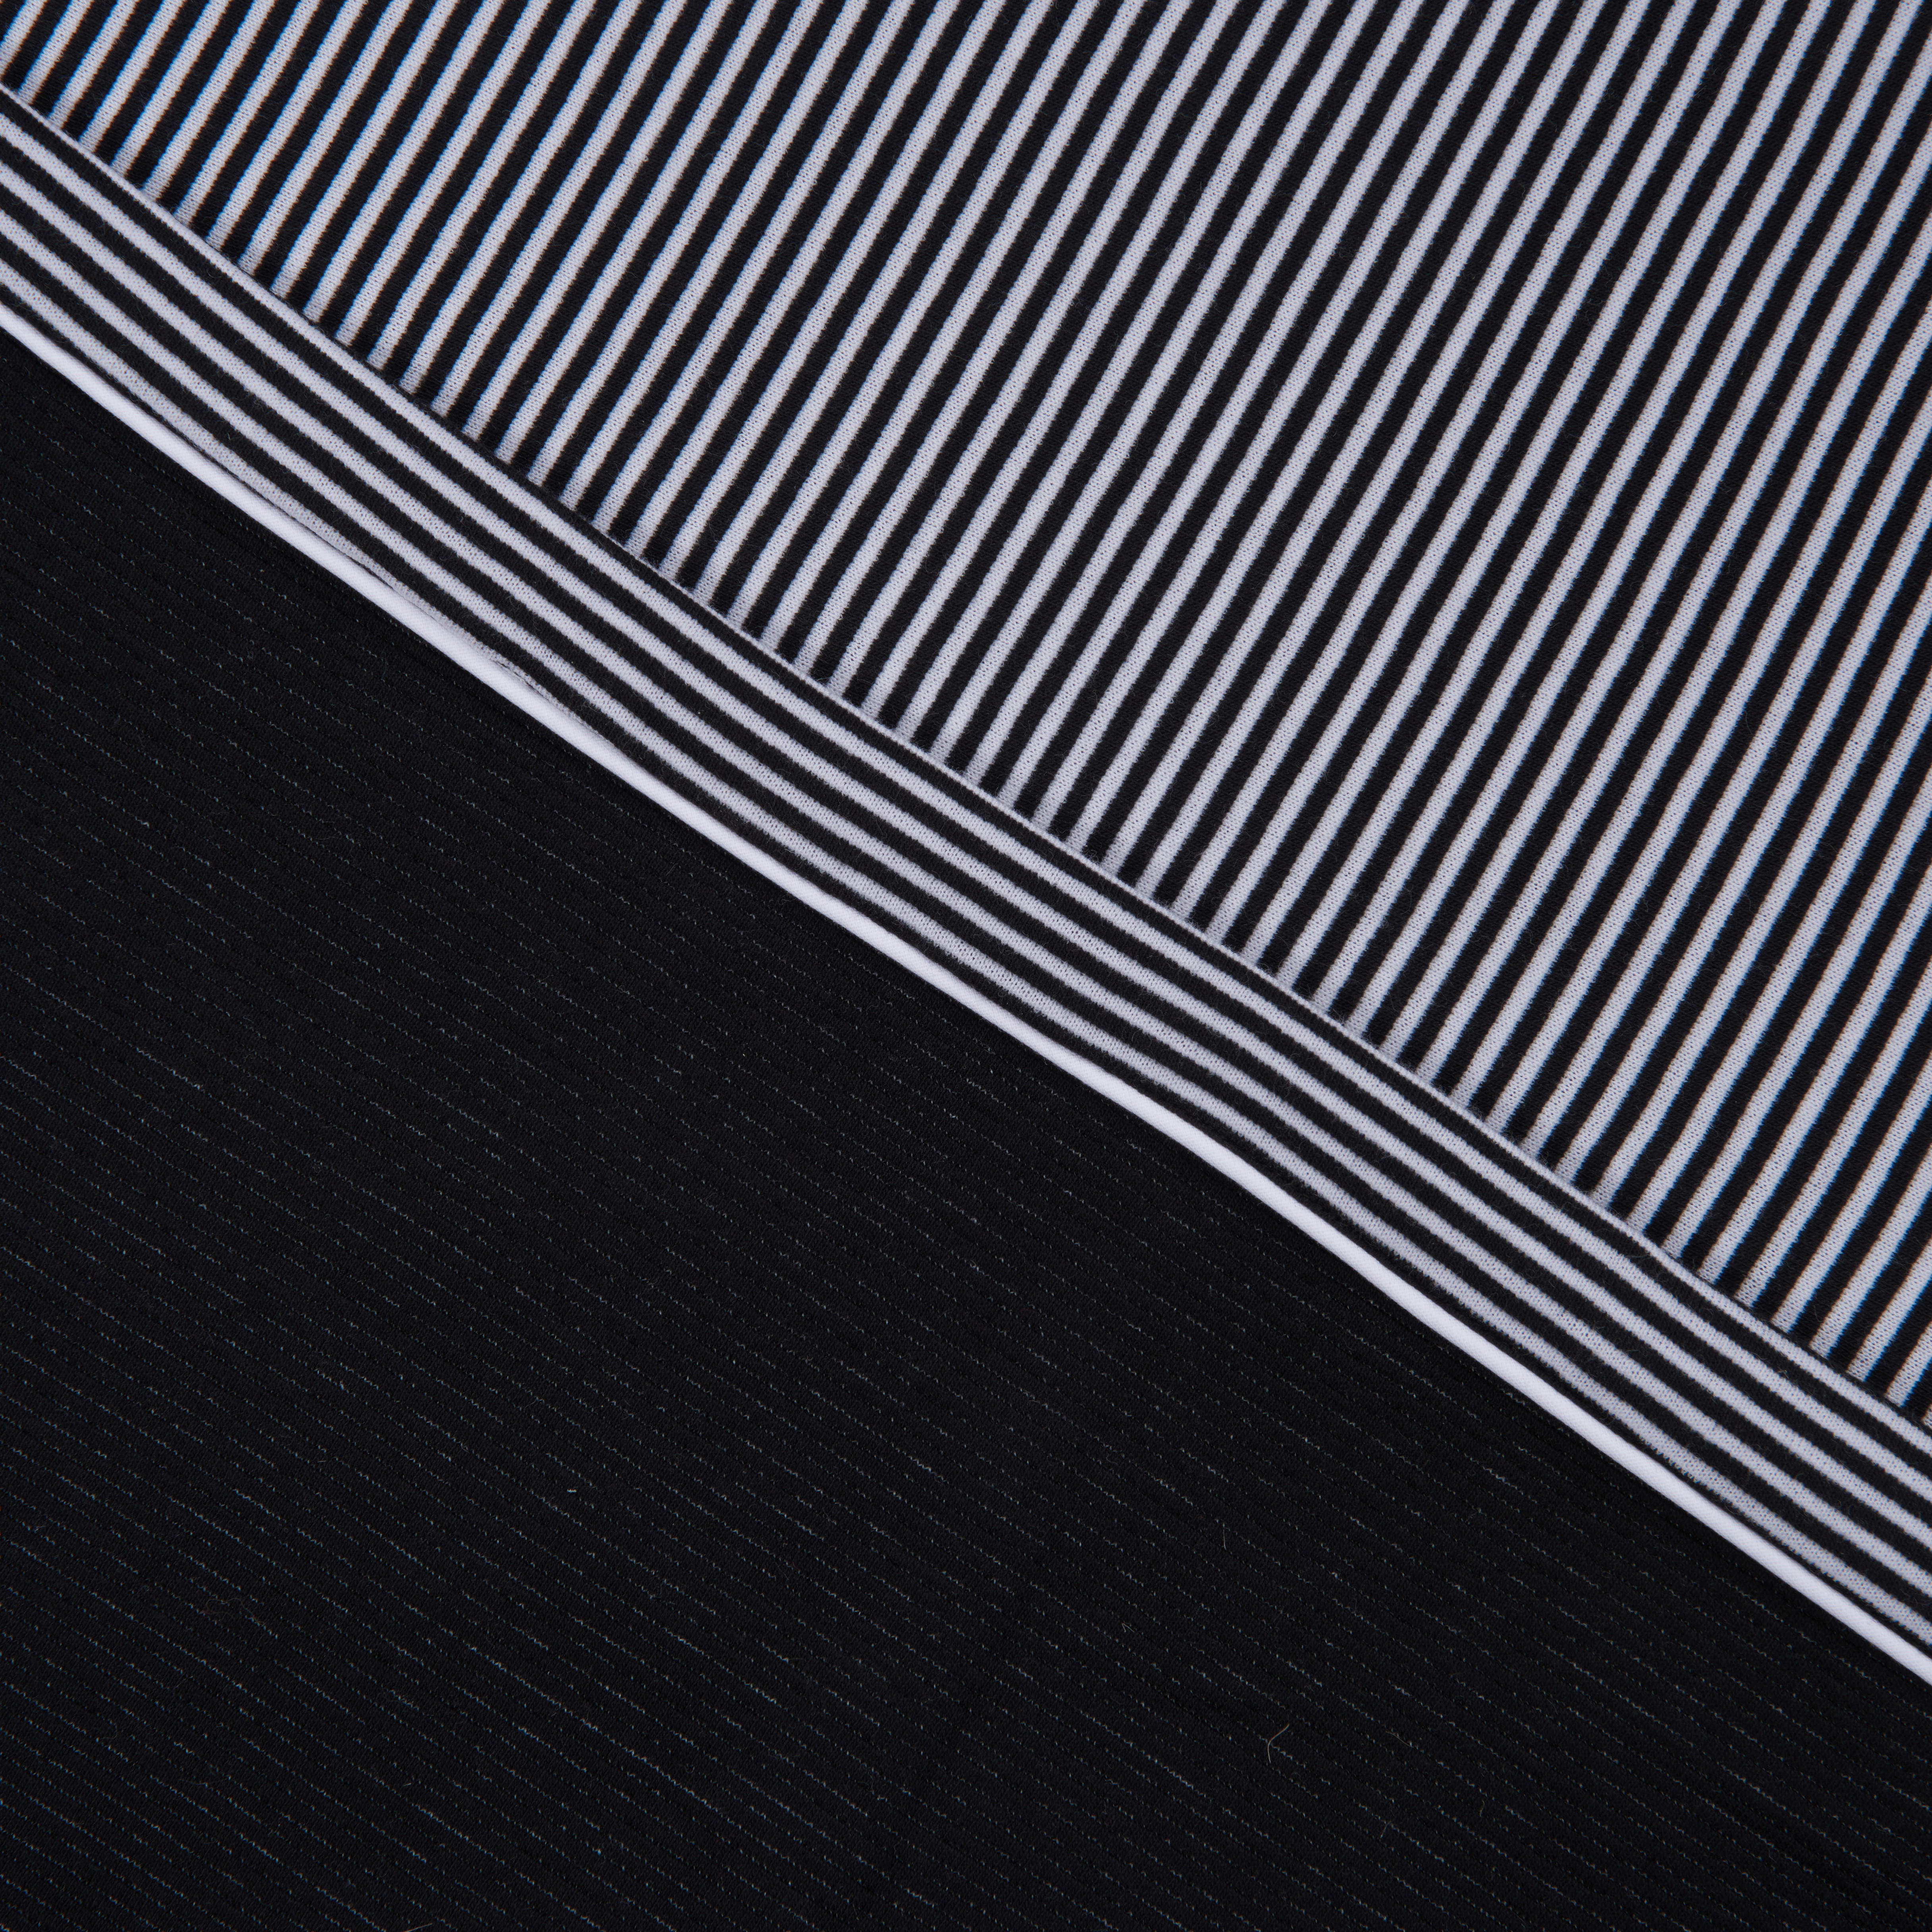 WOHNDECKE Luzzu 130/170 cm  - Schwarz/Weiß, Design, Textil (130/170cm) - Ambiente